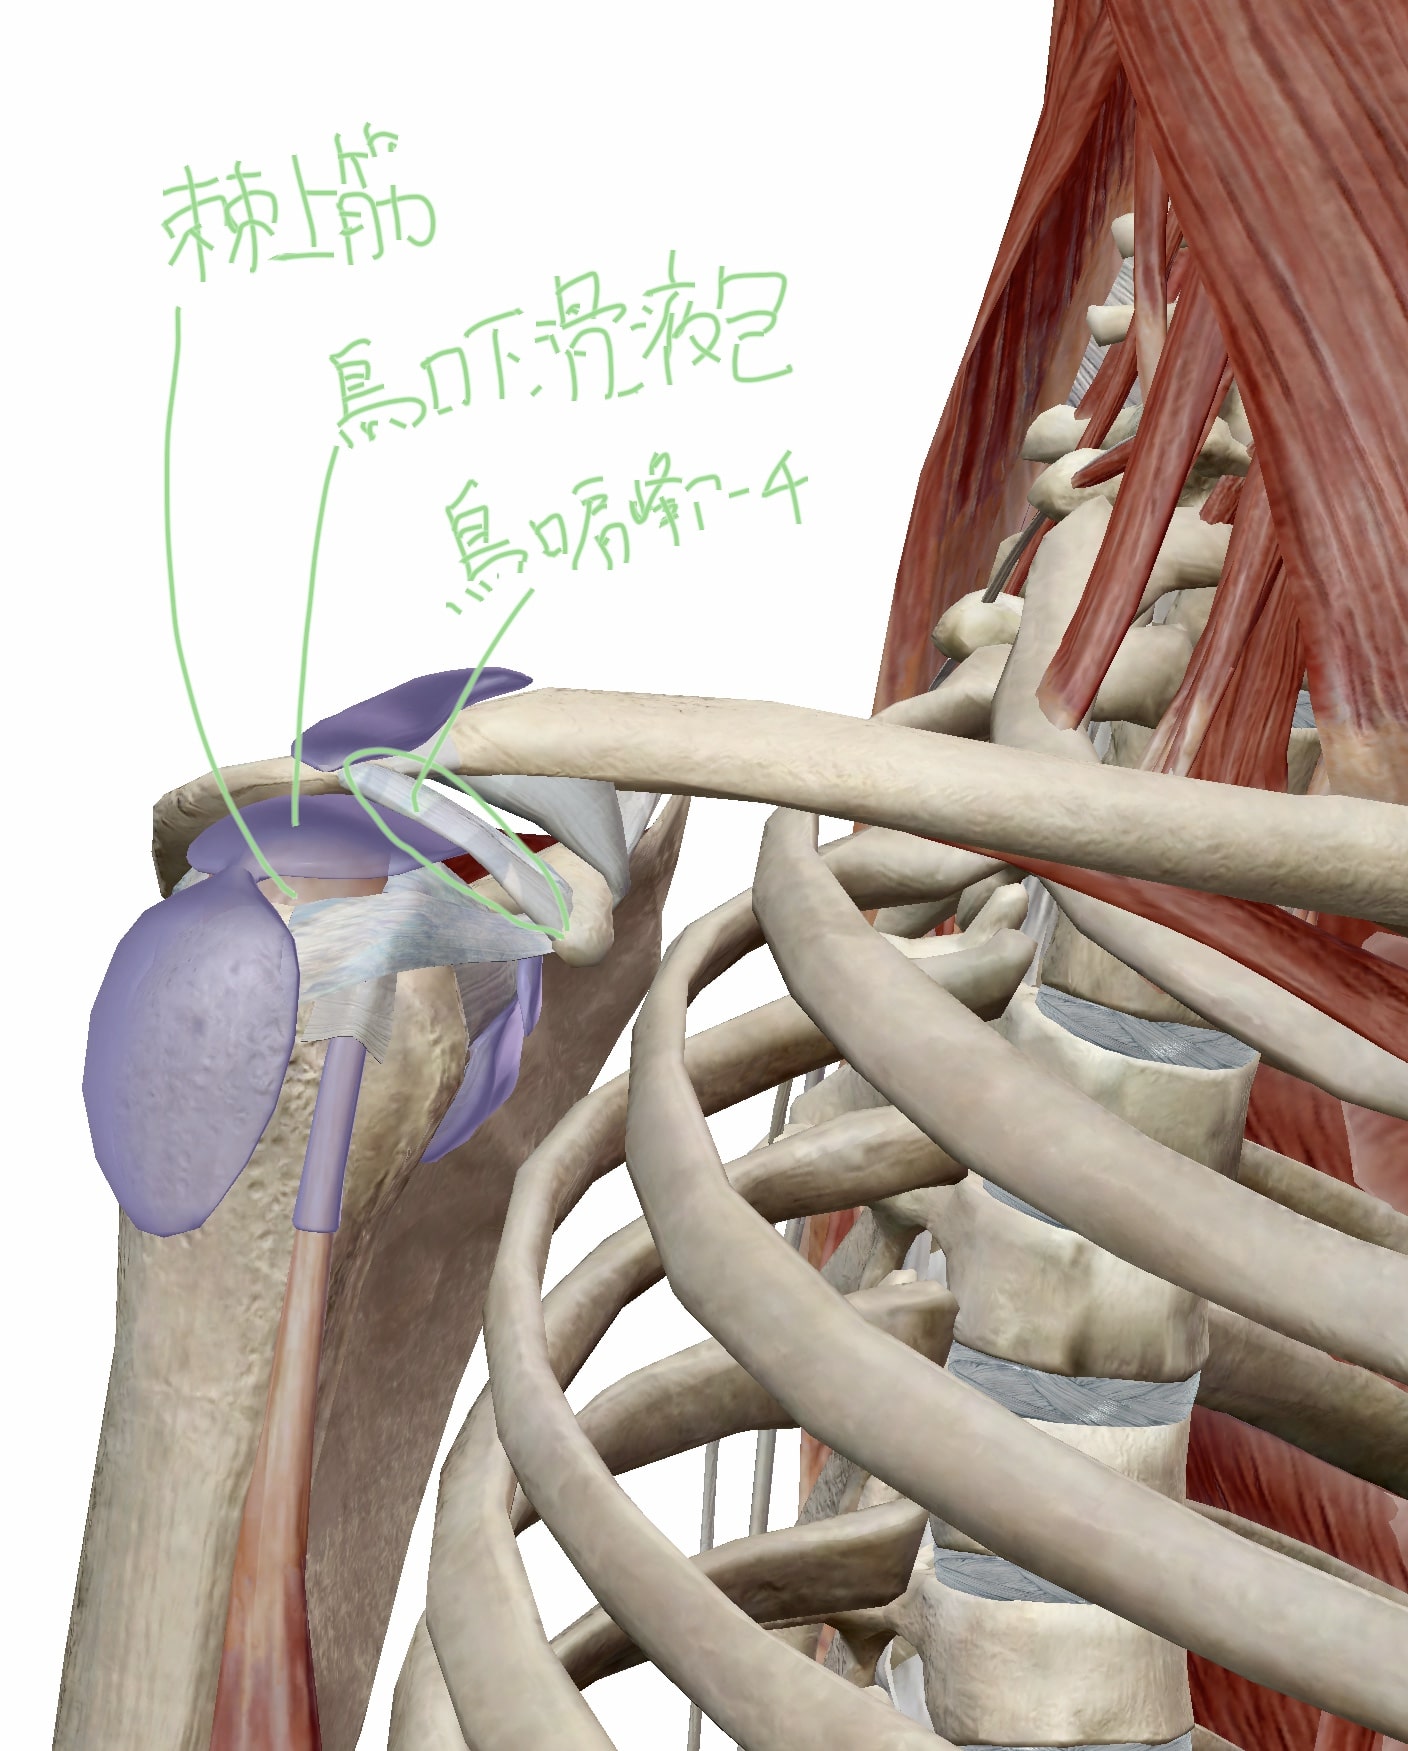 棘上筋と烏口下滑液包と烏口肩峰アーチの位置関係の図